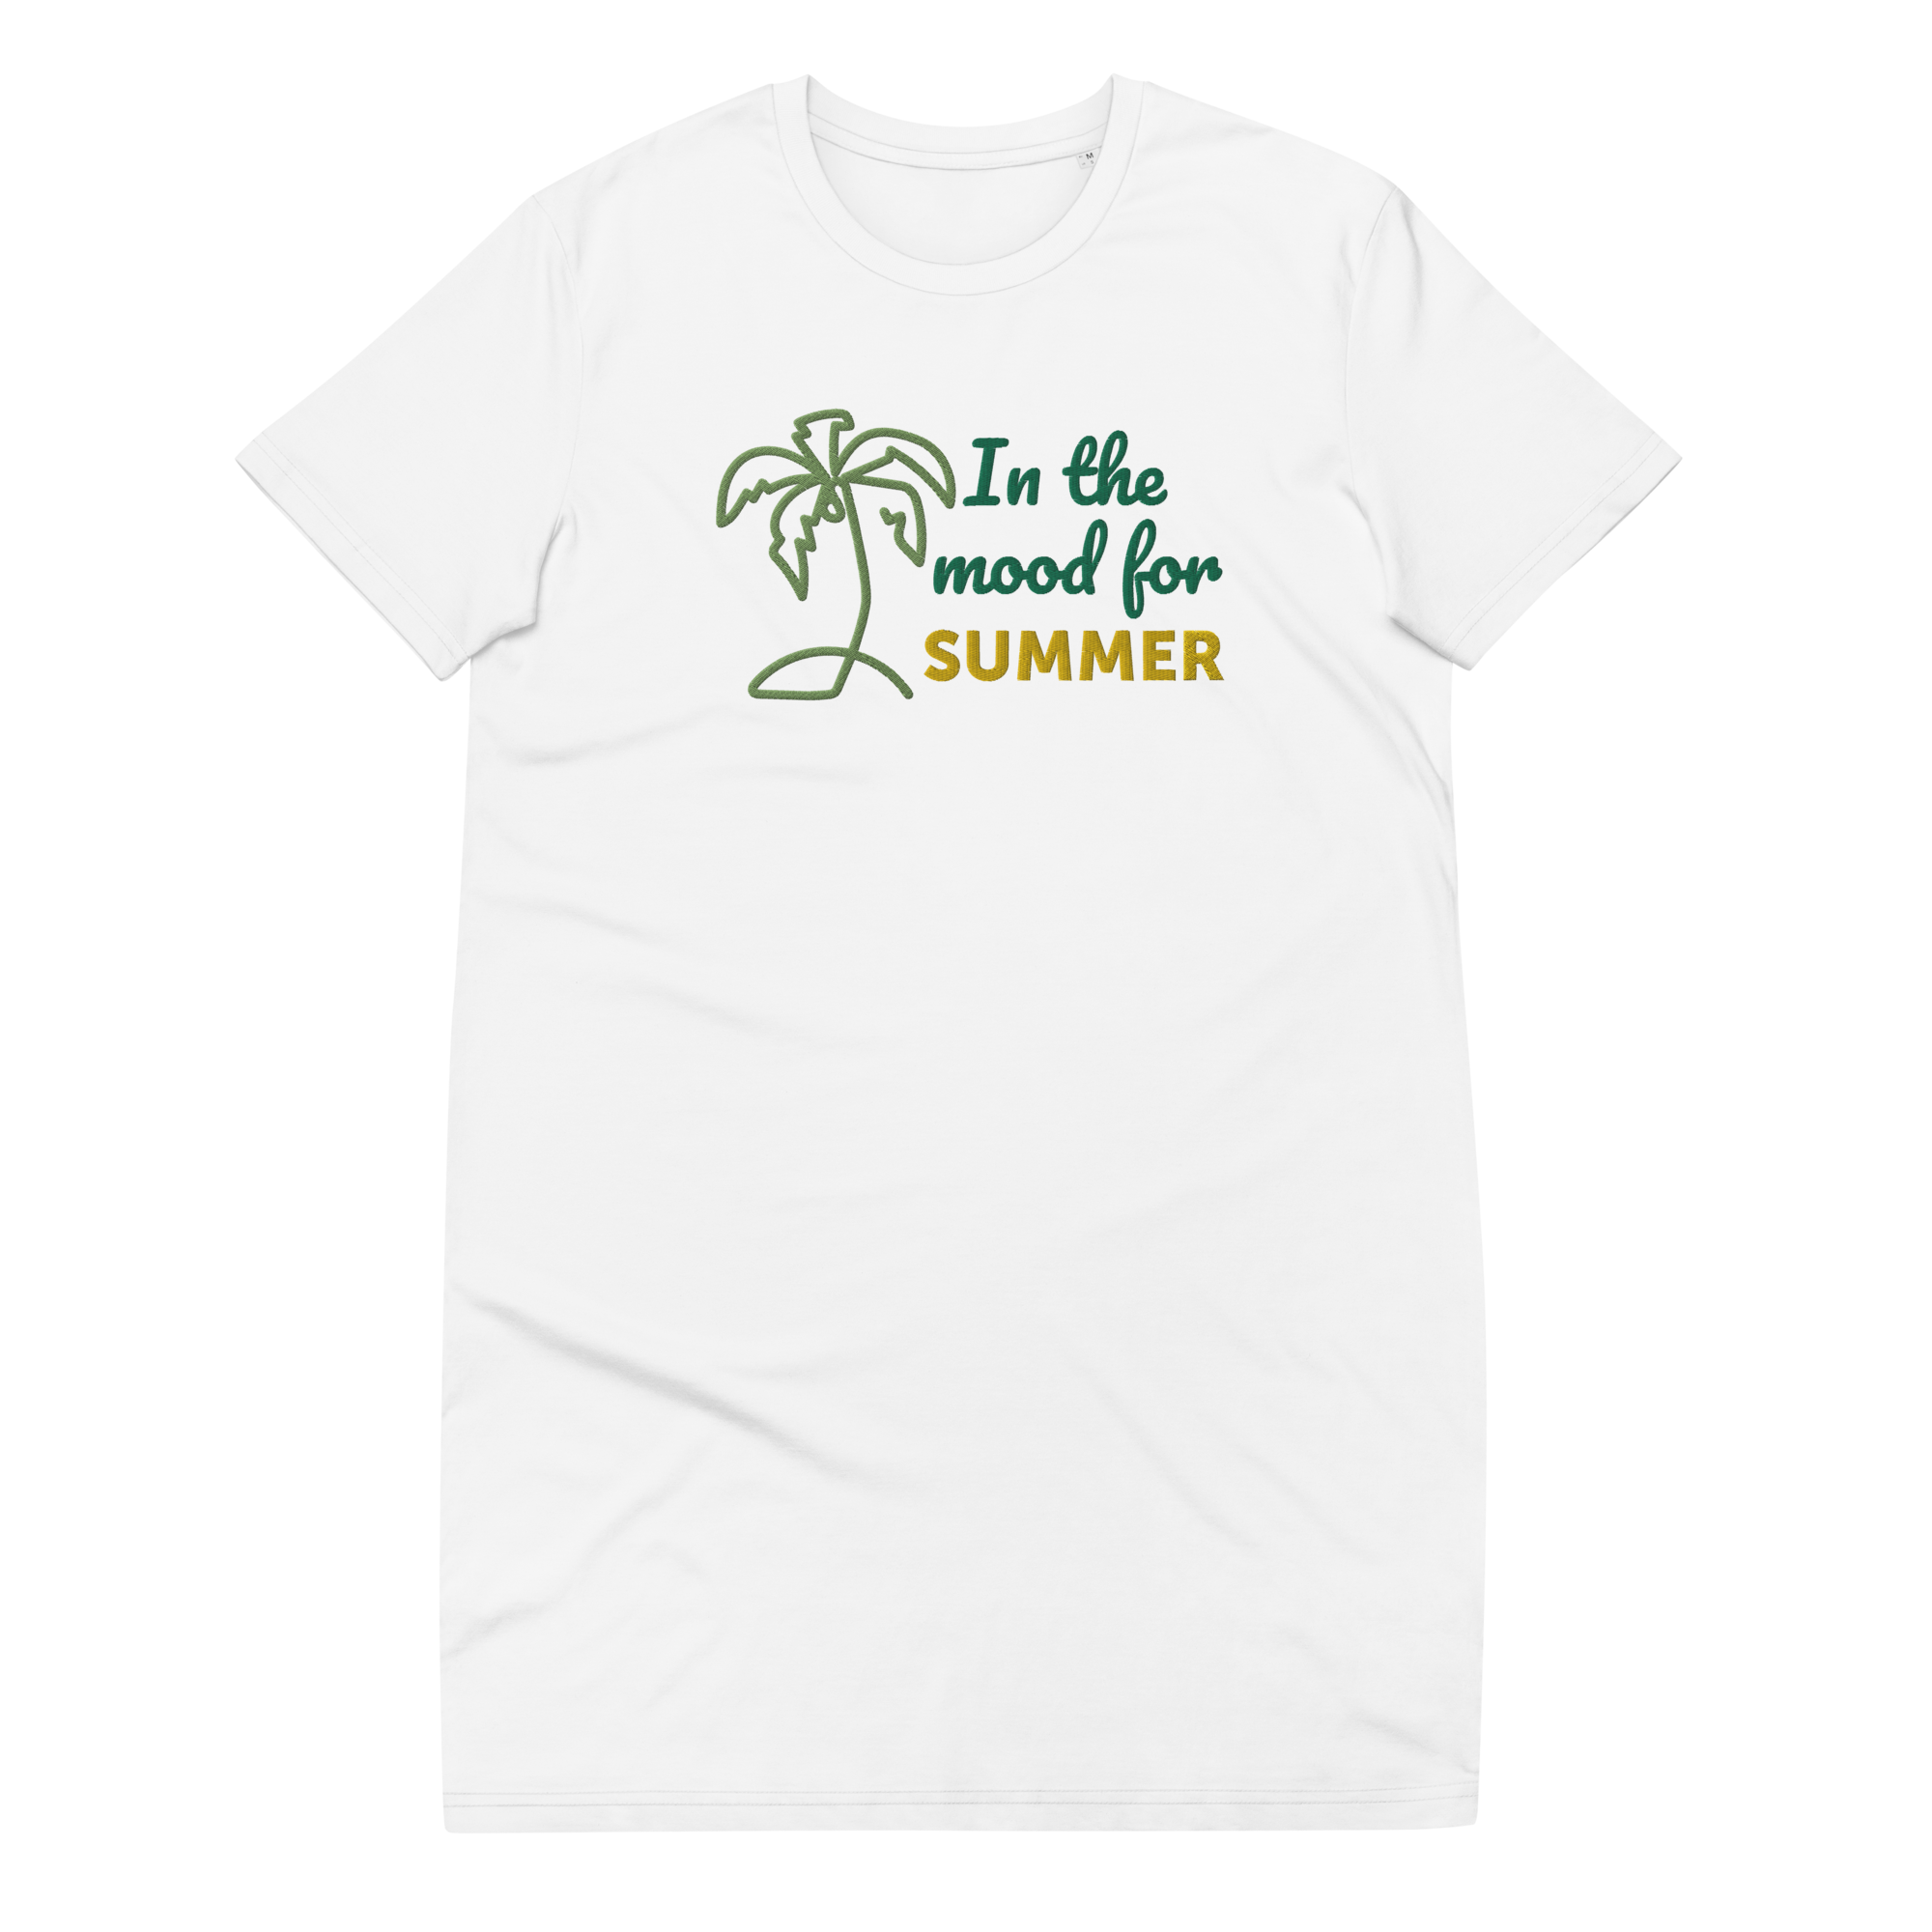 Summer Sun 2023 Collection - Organic Cotton T-Shirt Dress